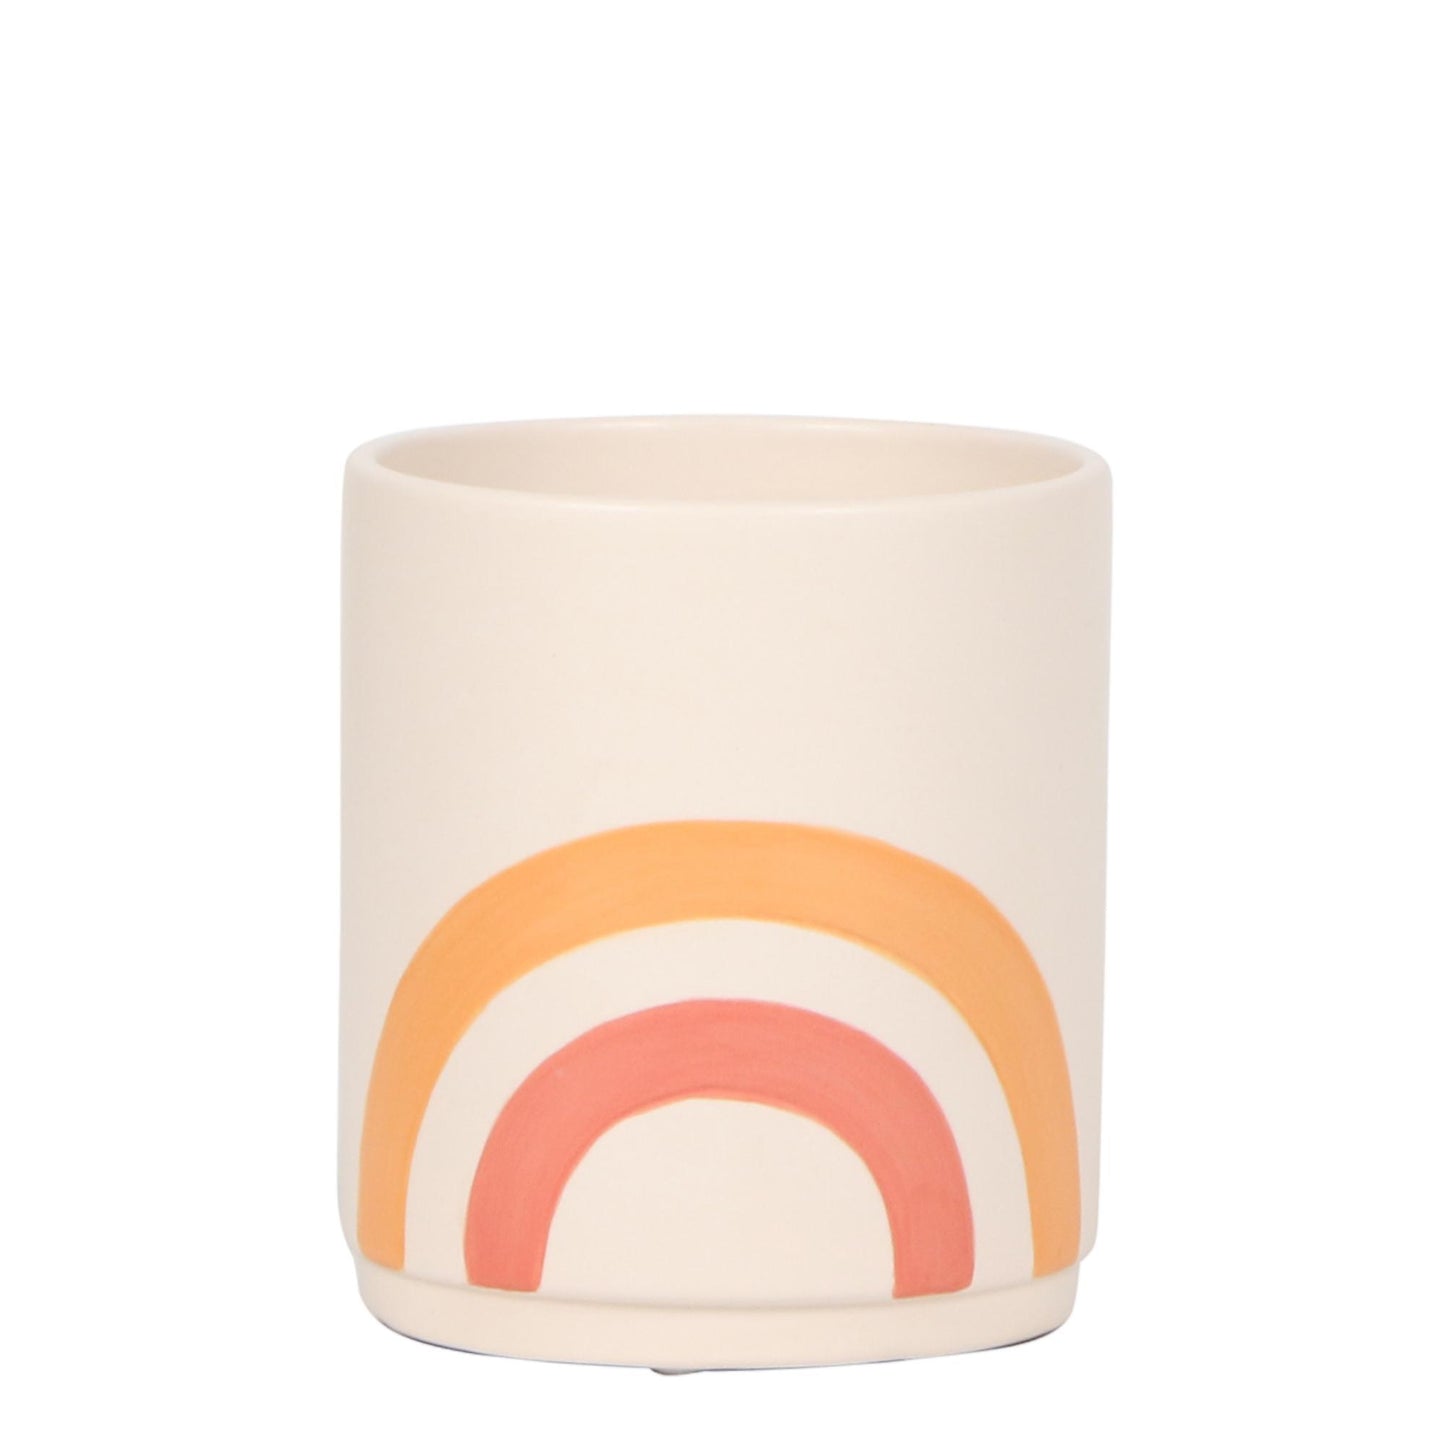 Kolibri Home | Rainbow peach bloempot - Crème keramieken sierpot met print - potmaat Ø9cm